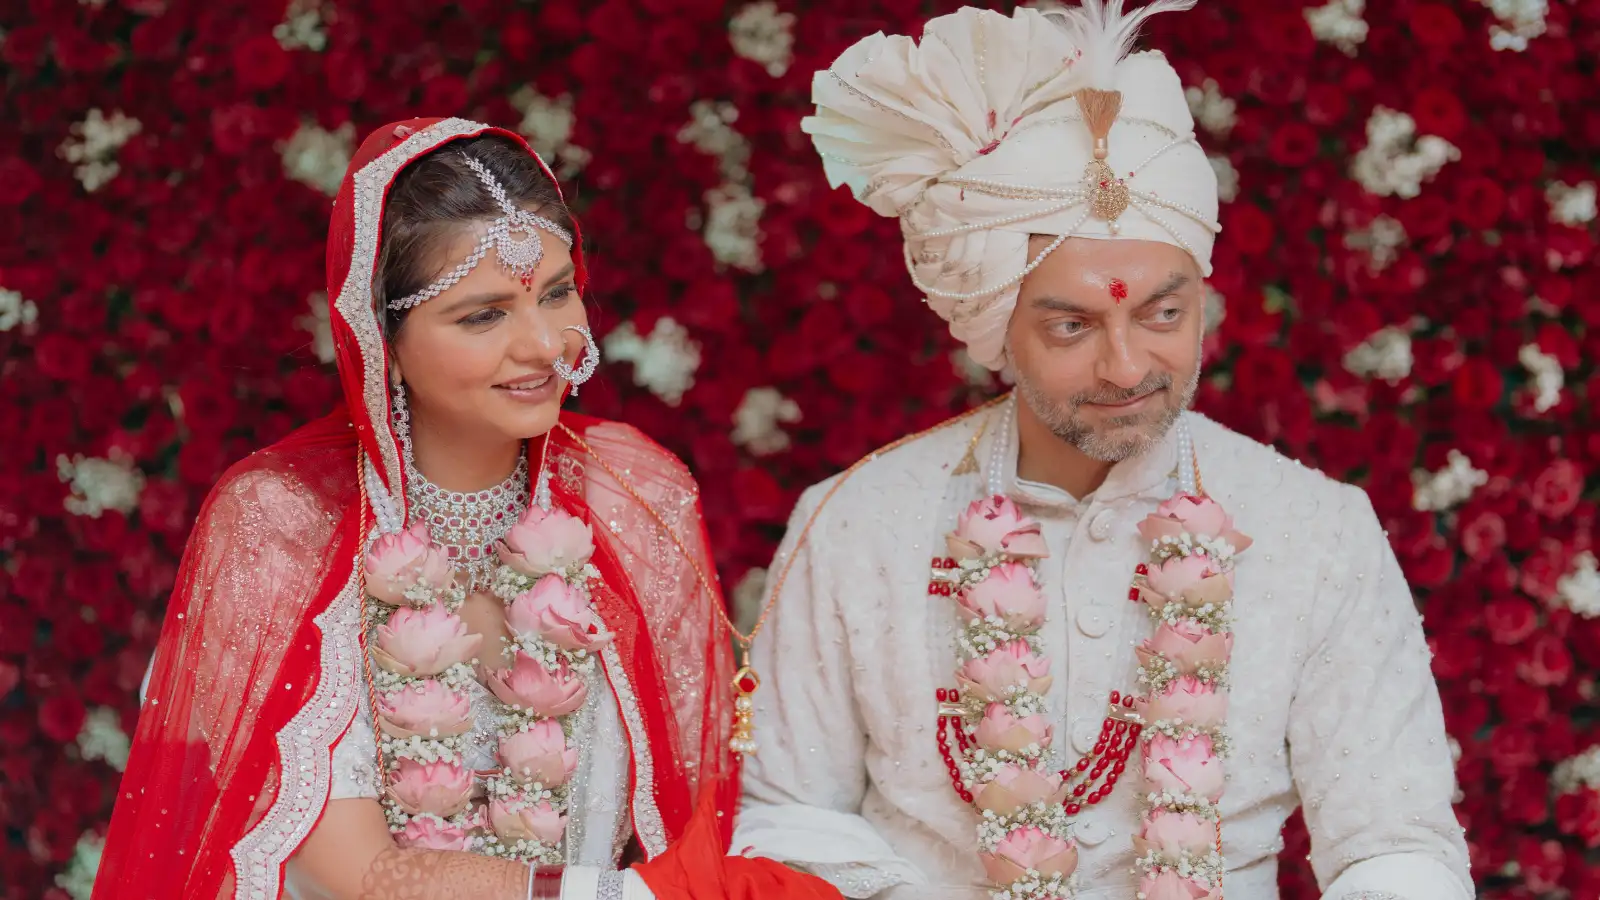 दलजीत कौर ने शेयर की पहली फोटो, कमरे में पति इस अंदाज में ले गए अपनी दुल्हनिया, देखें Video- Daljit Kaur shared the first photo, husband took his bride in this style in the room, watch video